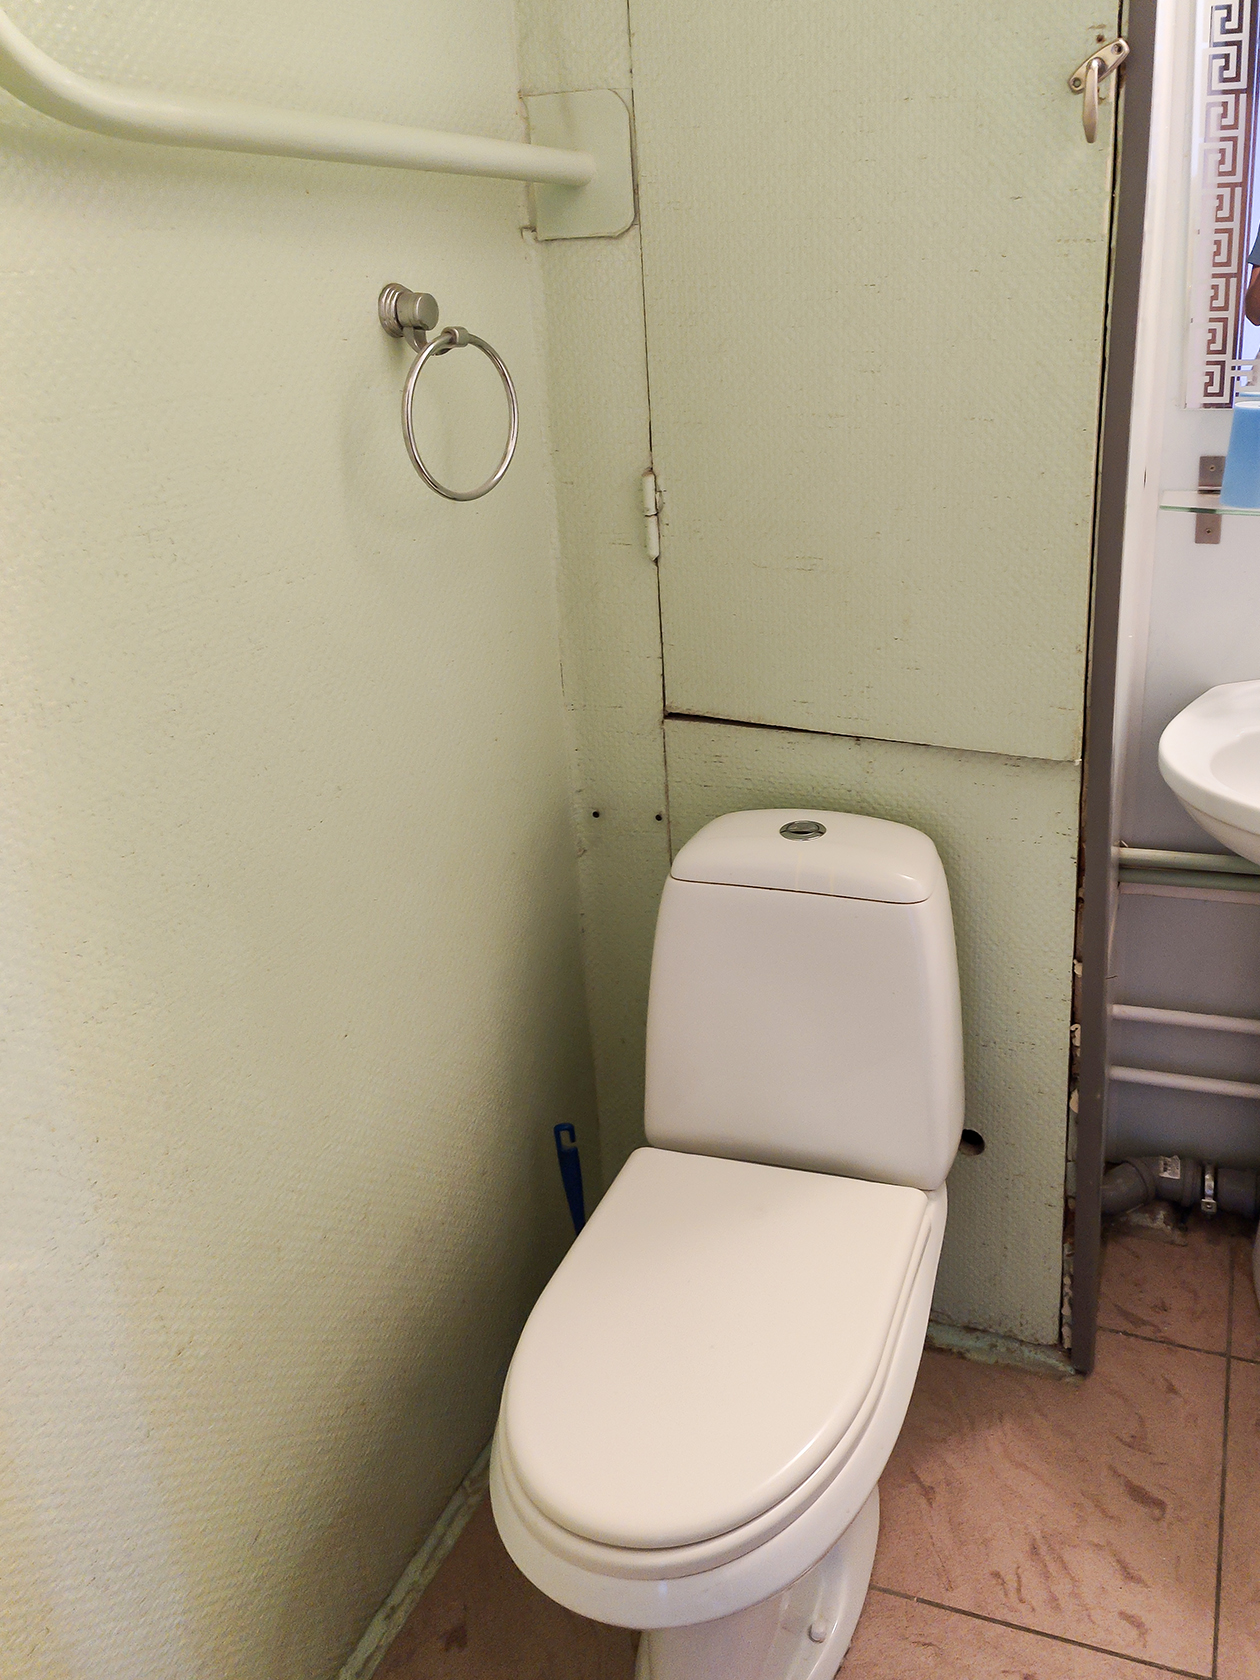 Короб из панелей ПВХ чтобы спрятать трубы в ванной комнате где стояки холодной и горячей воды.